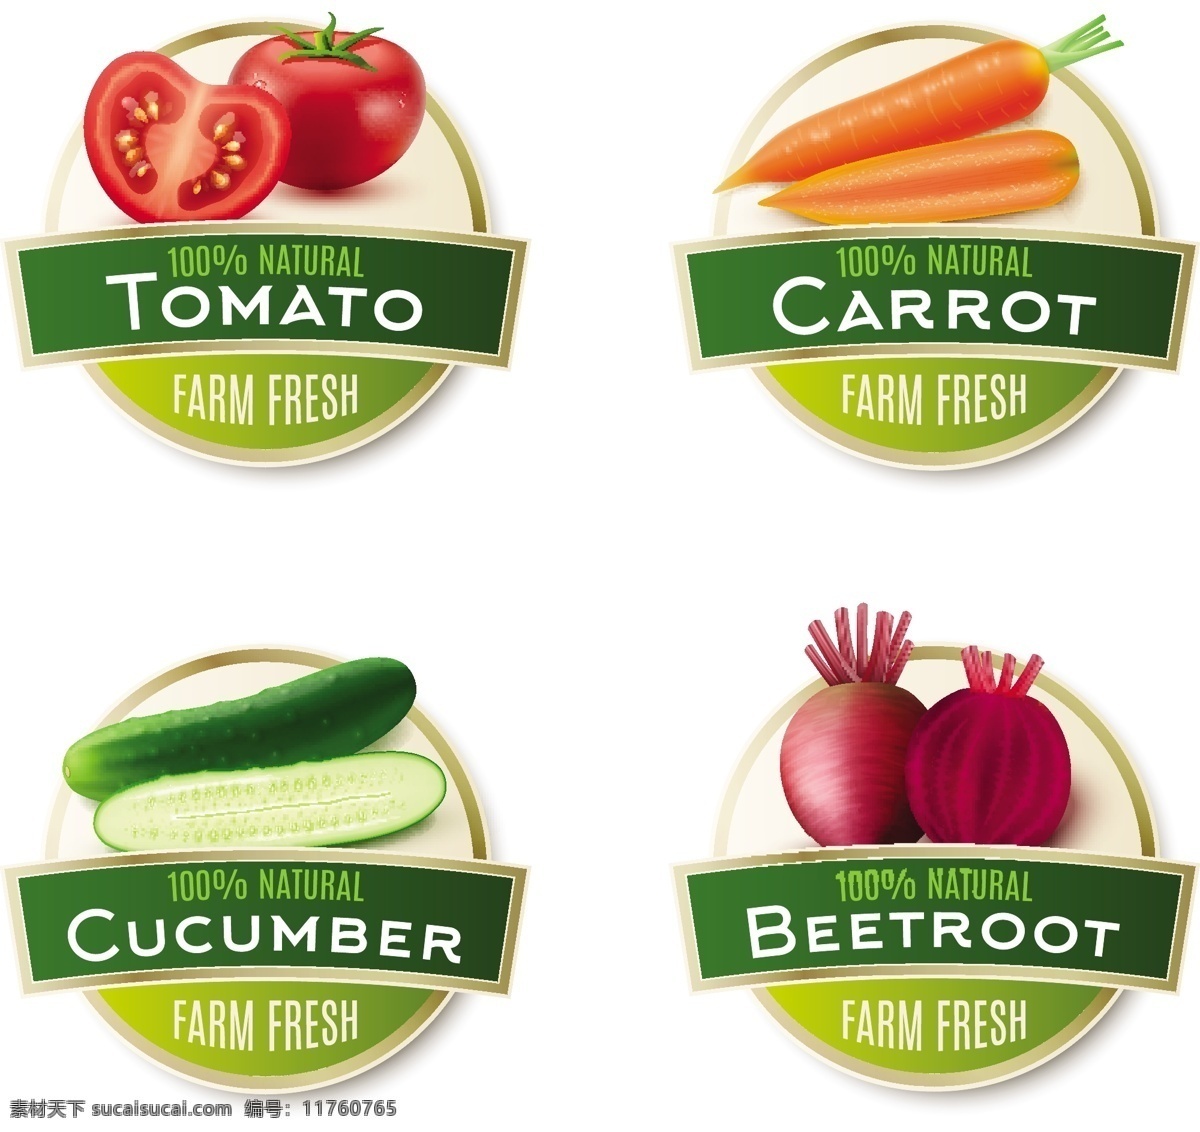 蔬菜徽章图片 西红柿 洋葱 胡萝卜 黄瓜 农产品徽章 农业徽章 徽标 农业徽标 logo设计